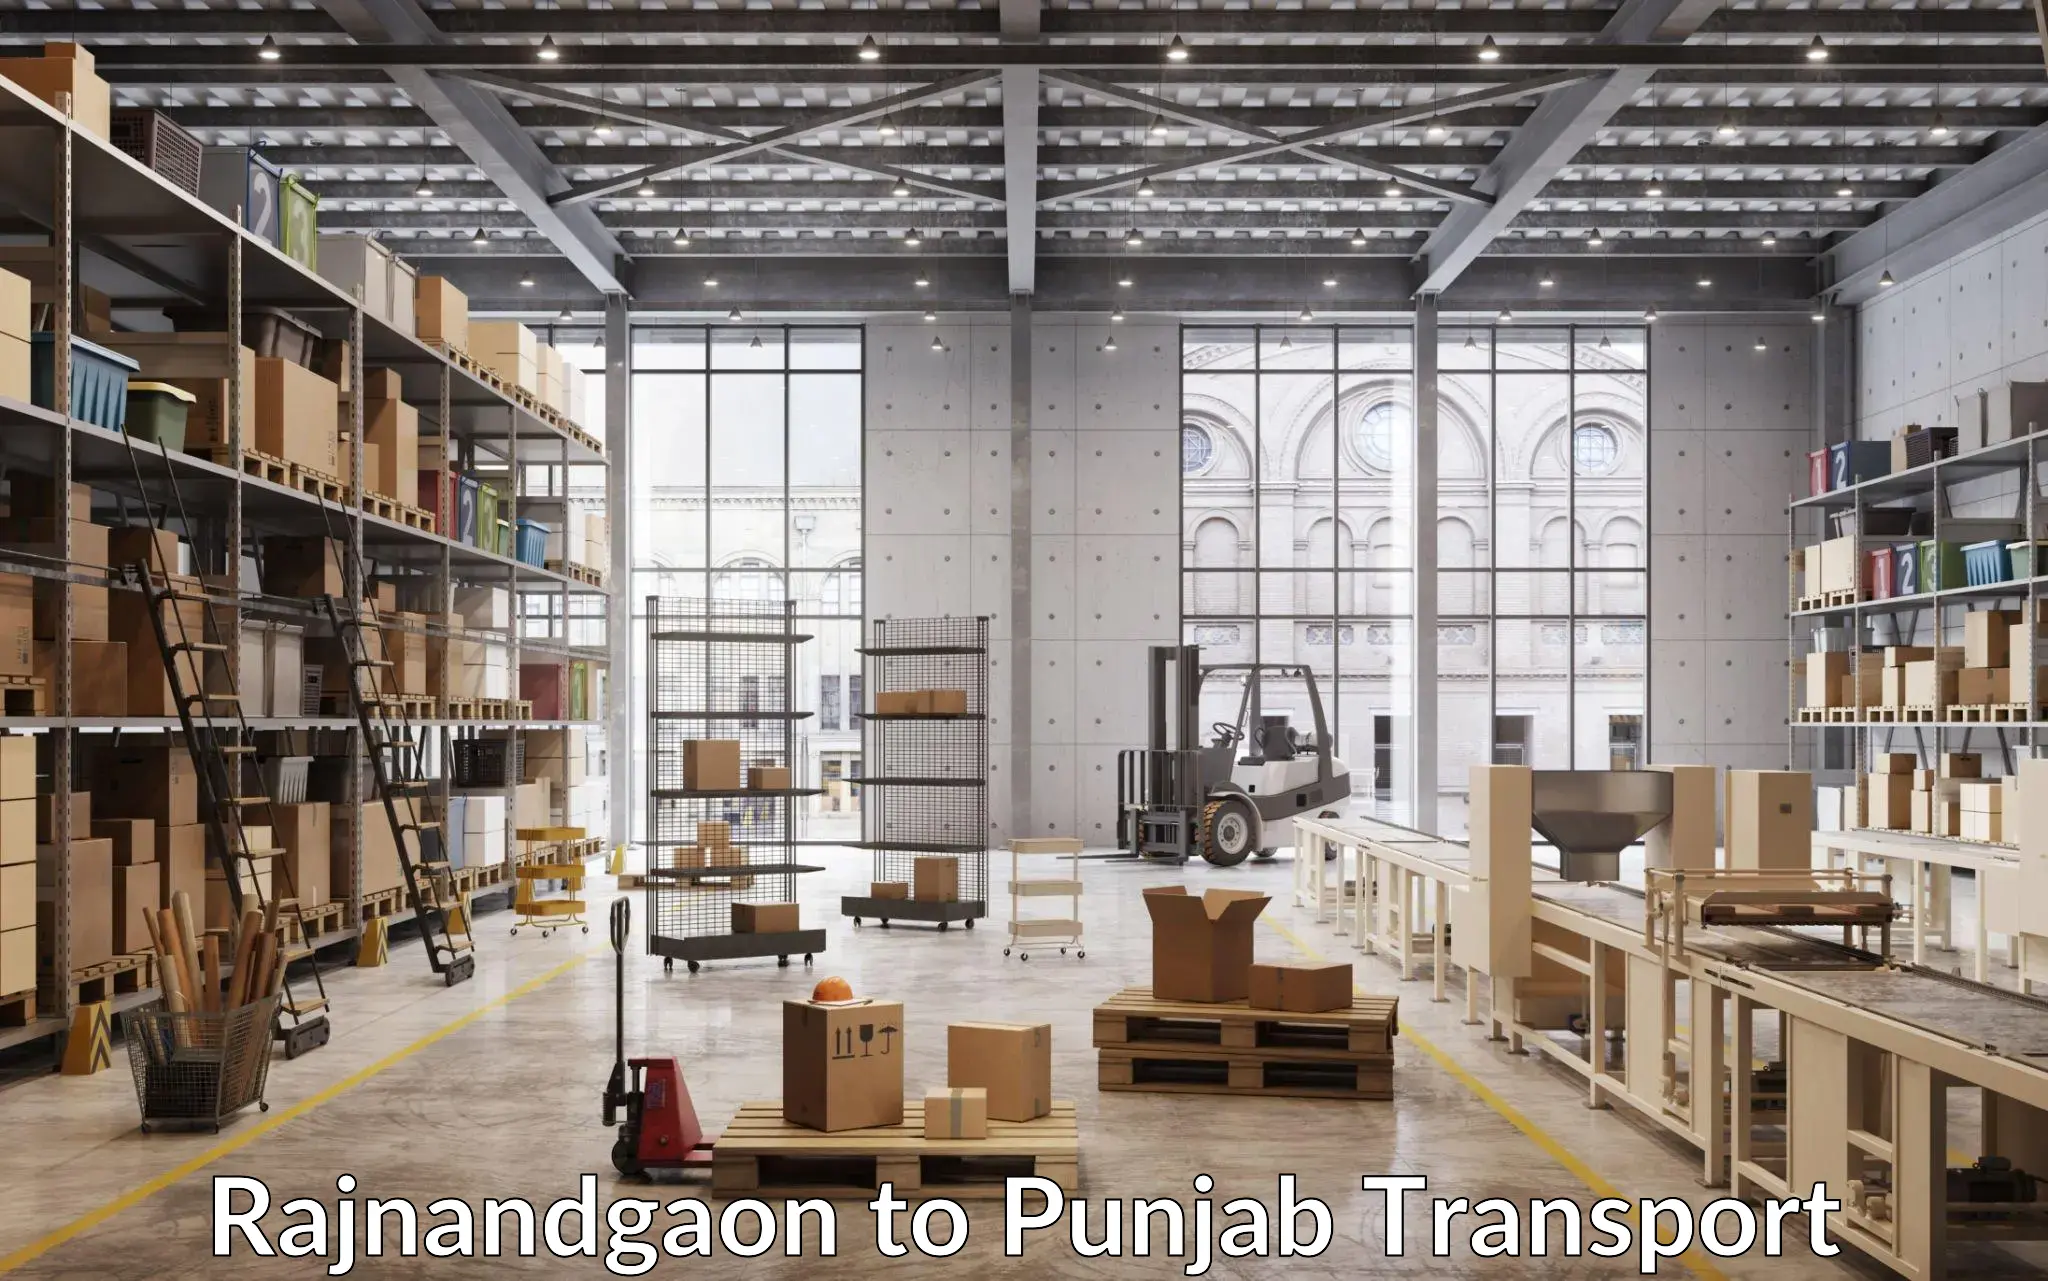 Transport in sharing Rajnandgaon to Punjab